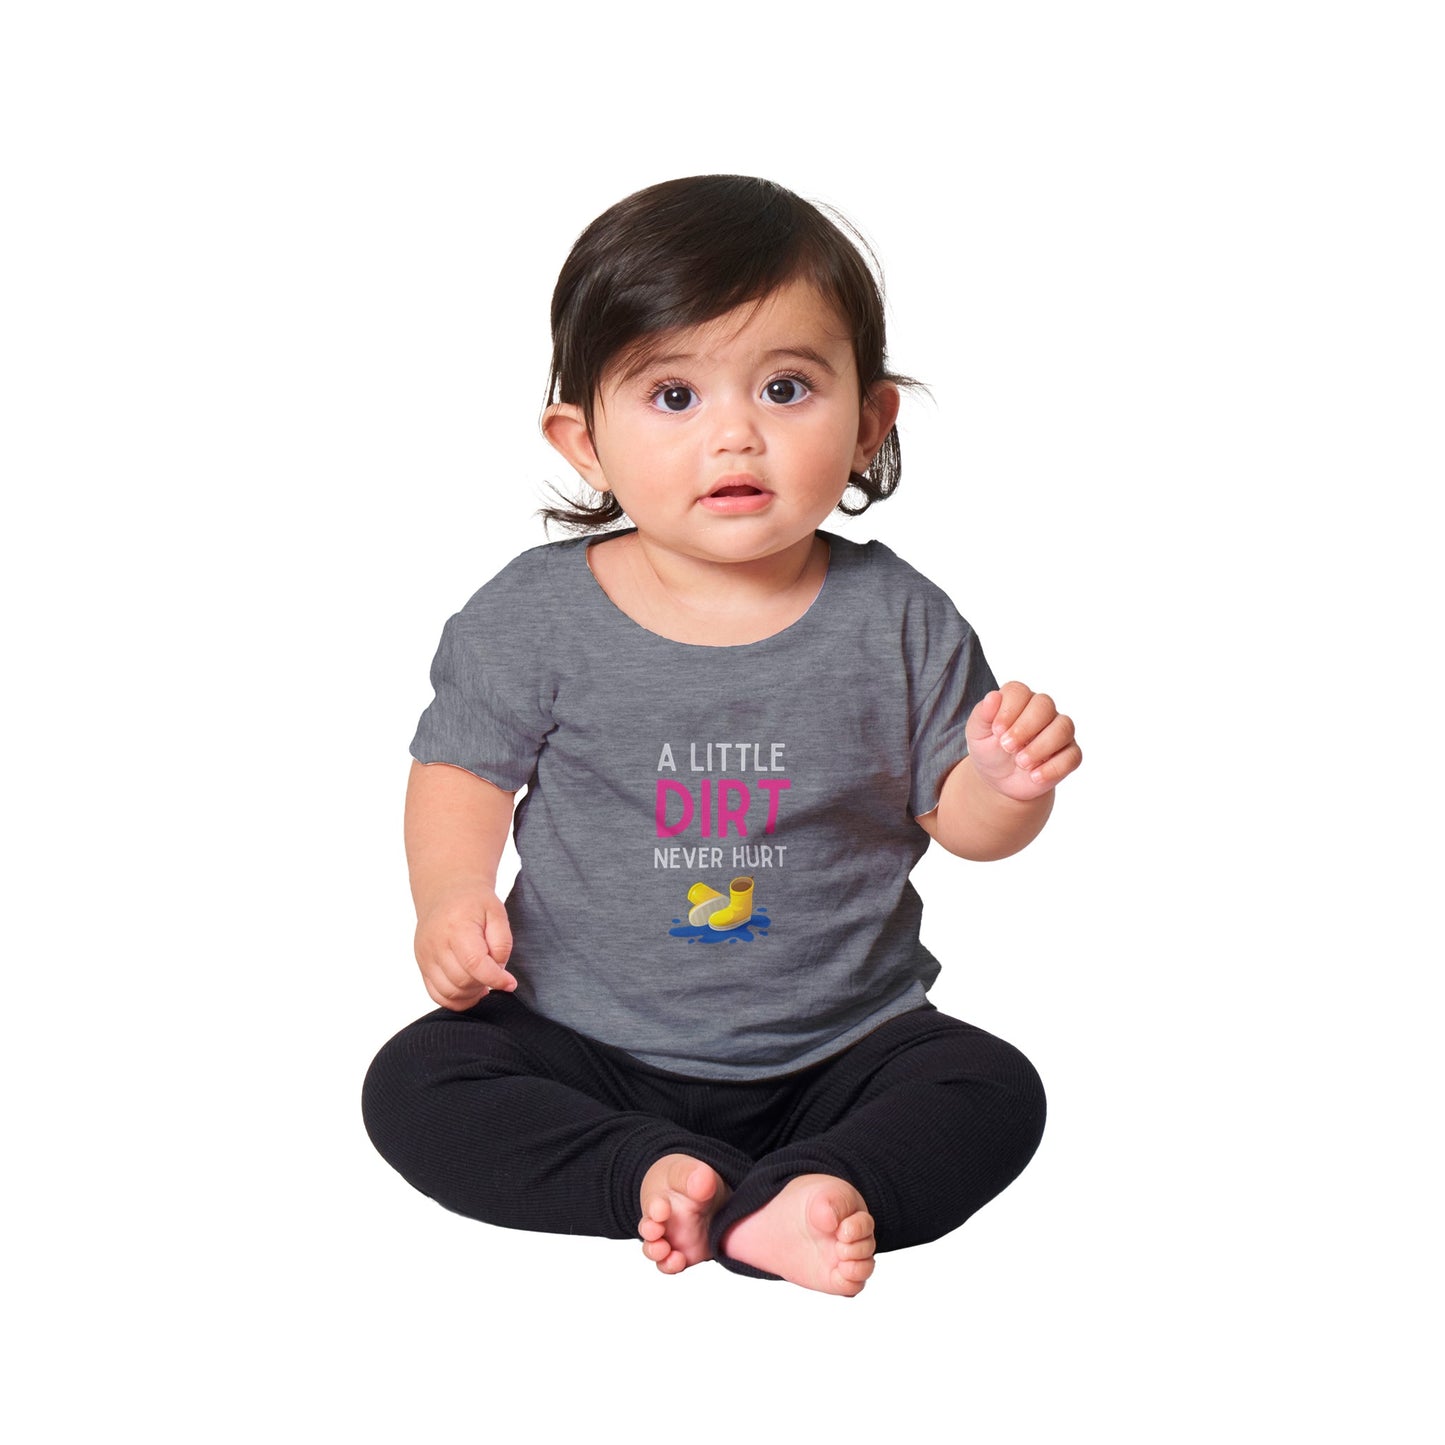 Baby 'A Little Dirt' Classic T-shirt